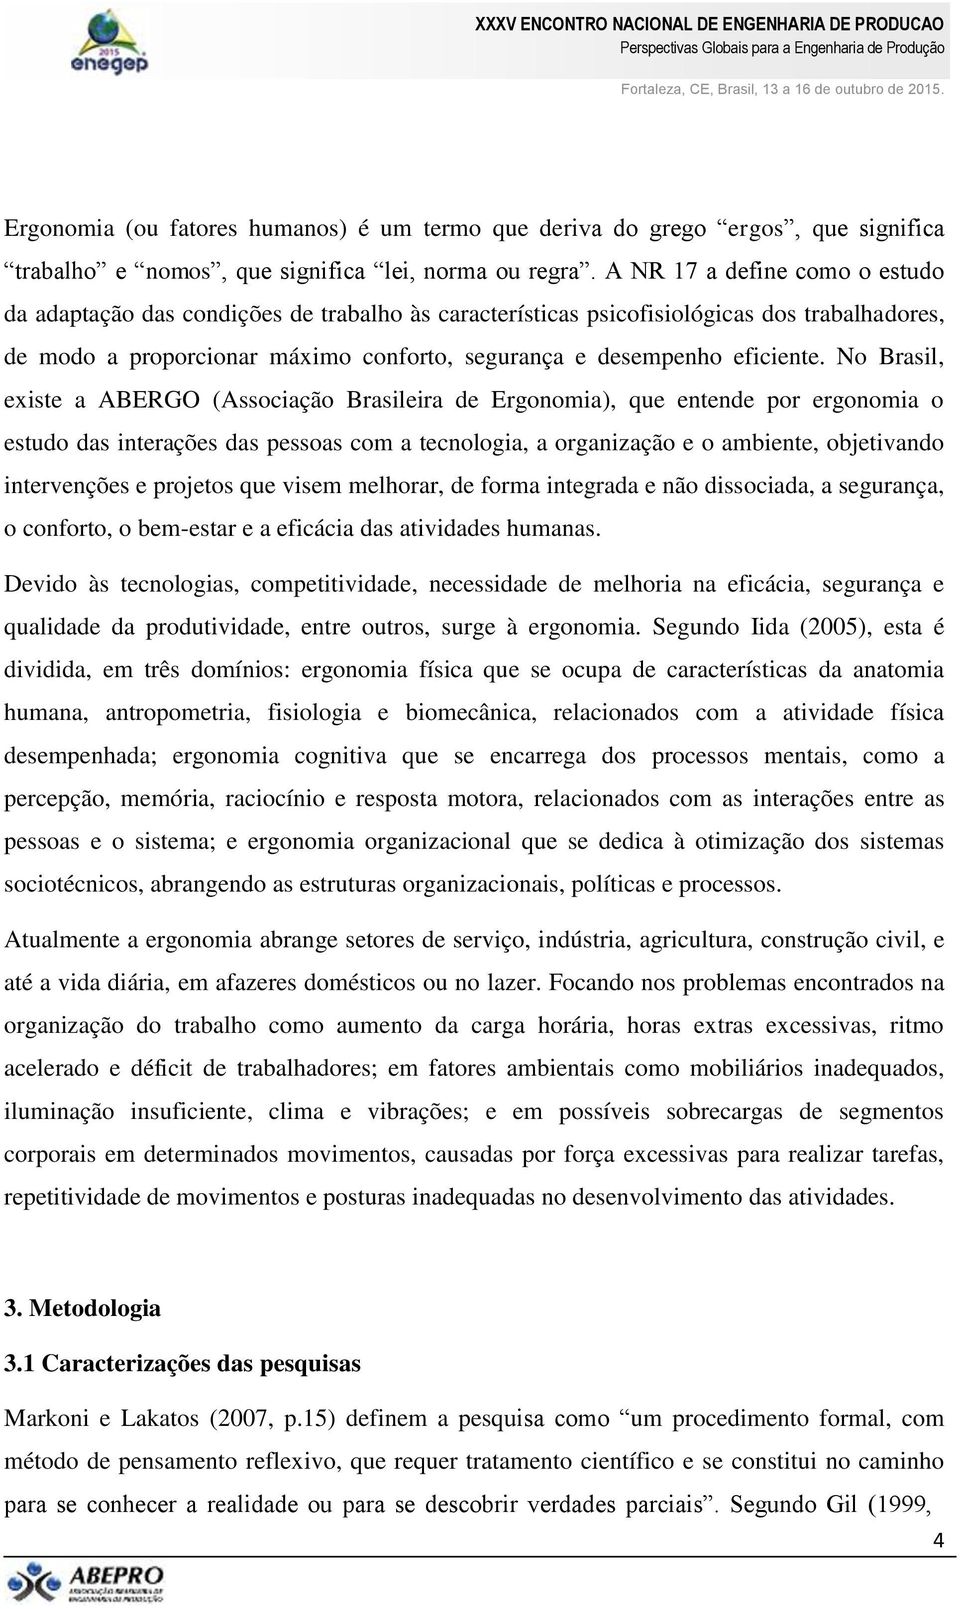 No Brasil, existe a ABERGO (Associação Brasileira de Ergonomia), que entende por ergonomia o estudo das interações das pessoas com a tecnologia, a organização e o ambiente, objetivando intervenções e